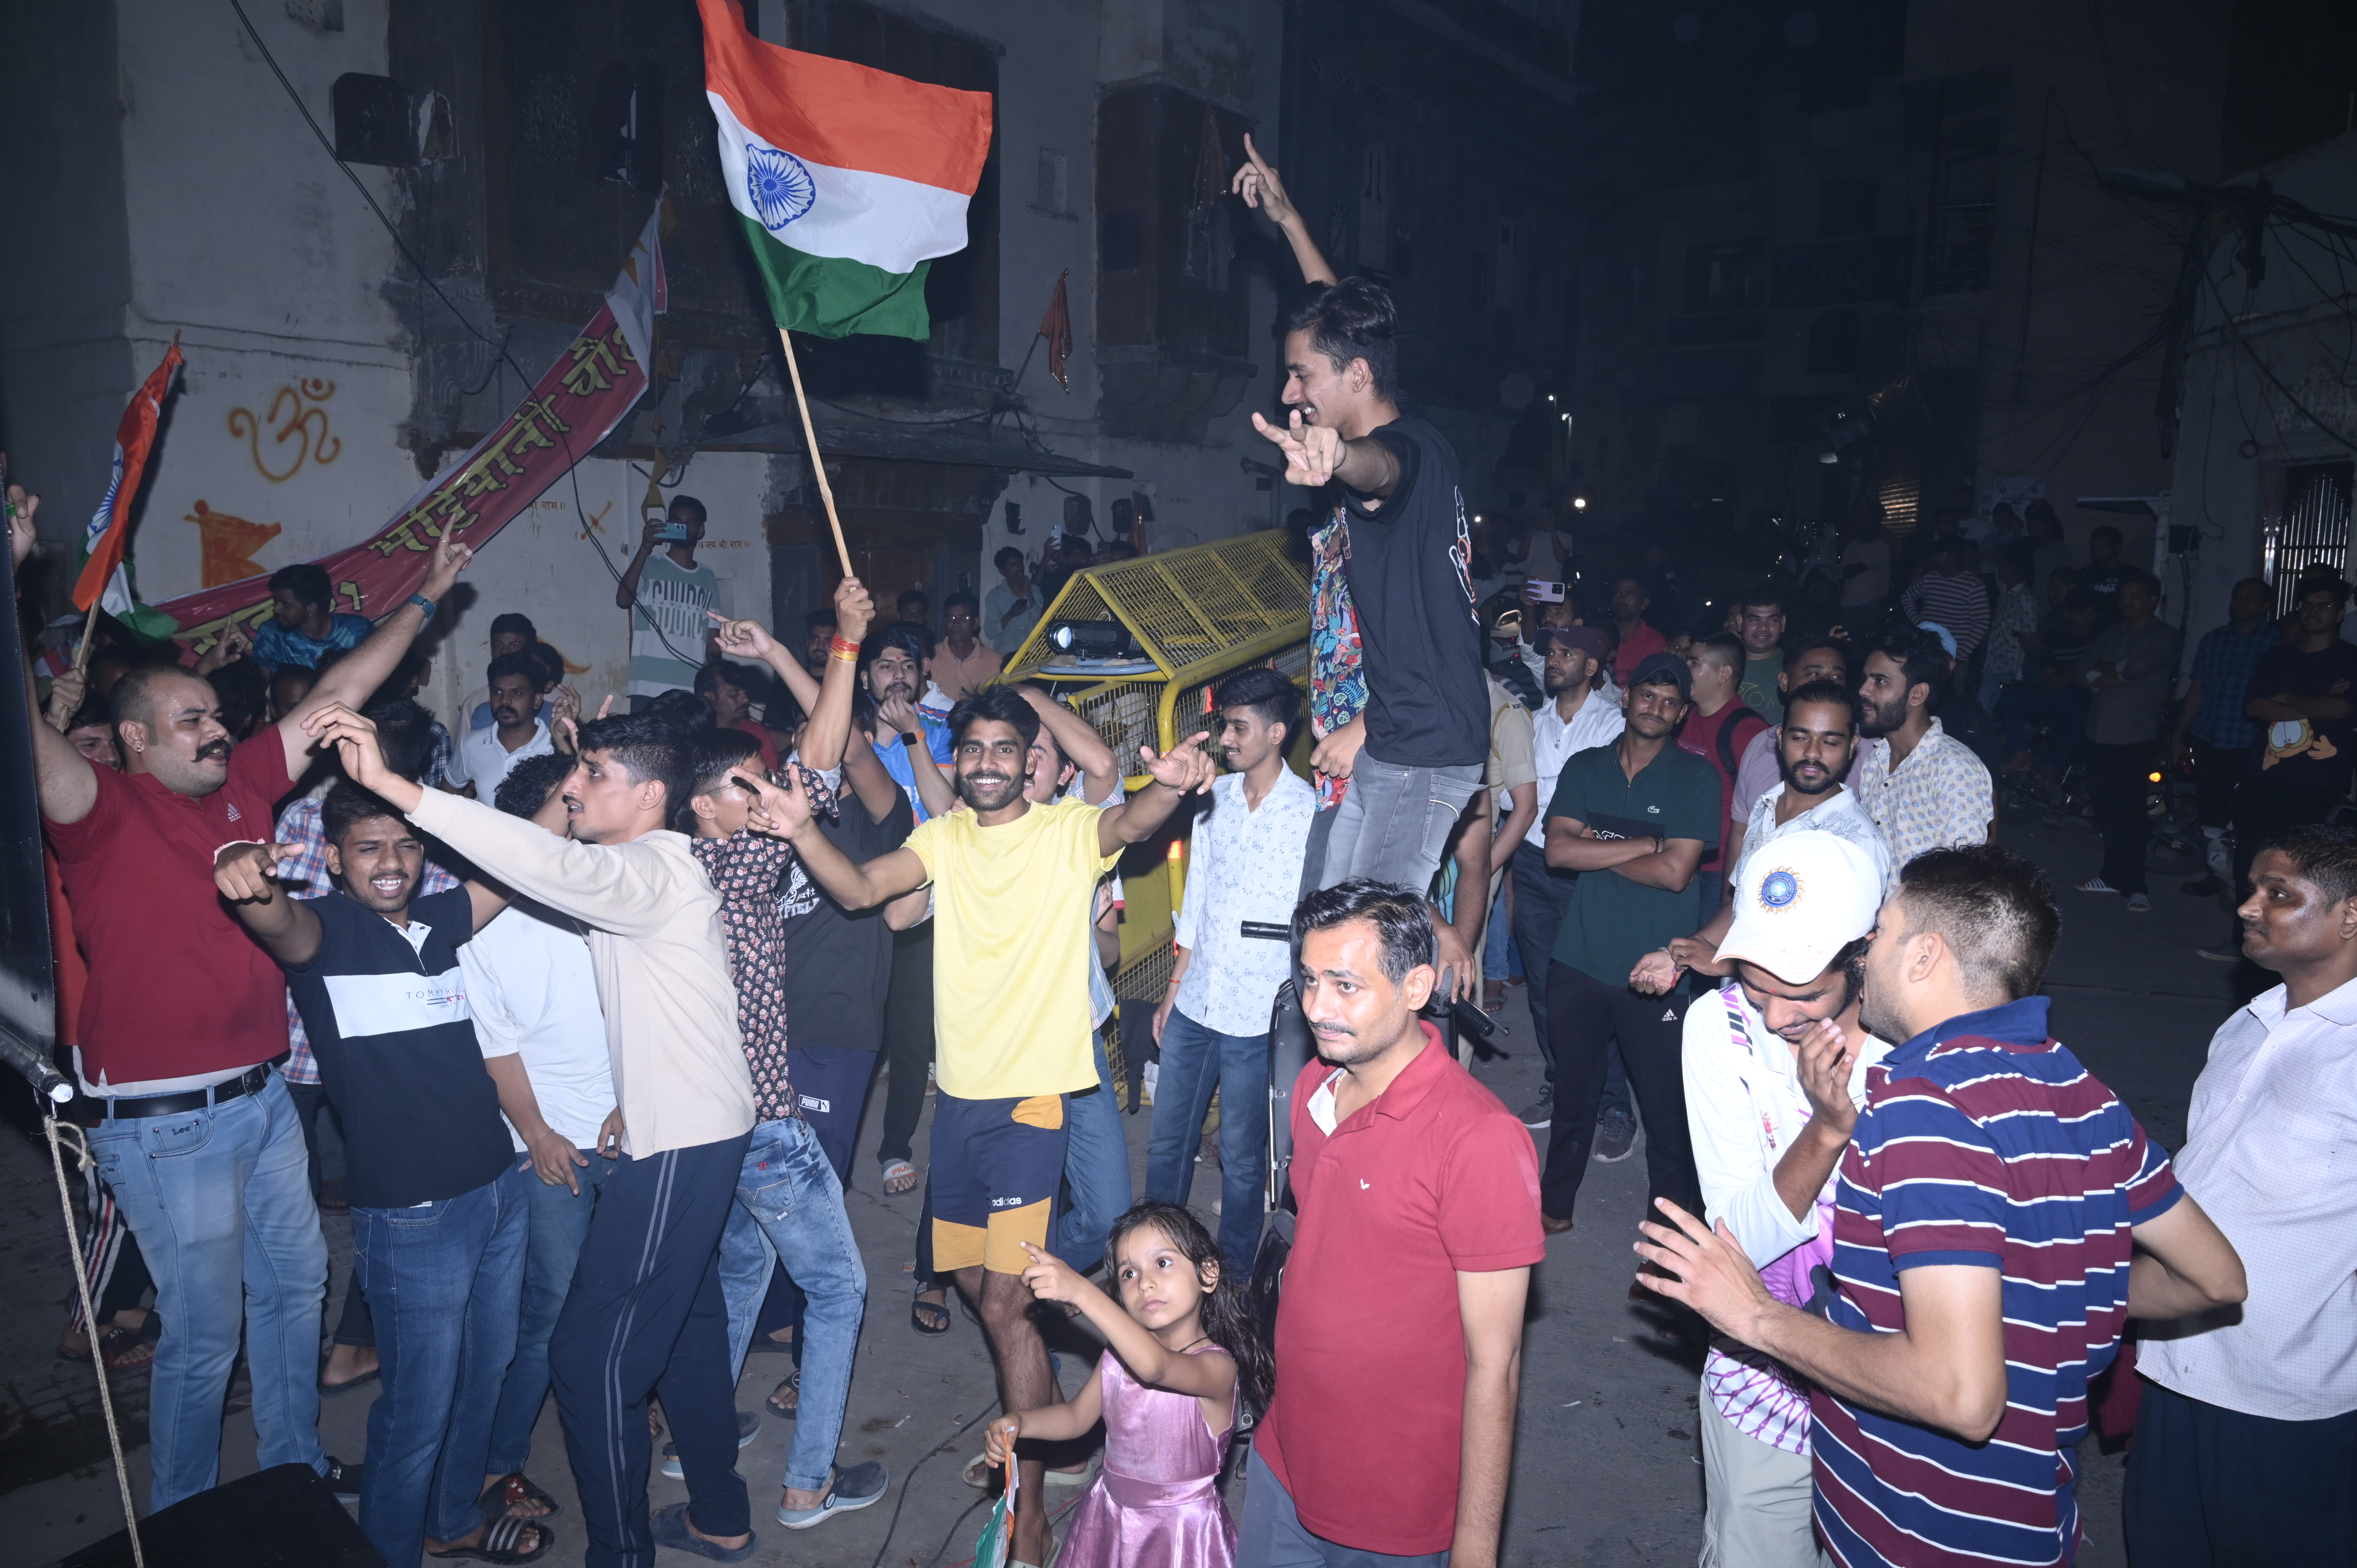 शनिवार रात टी-20 वर्ल्ड कप मैच में भारत की जीत के बाद उदयपुर में विभिन्न चौराहों
पर जश्न मनाते लोग देखें photo